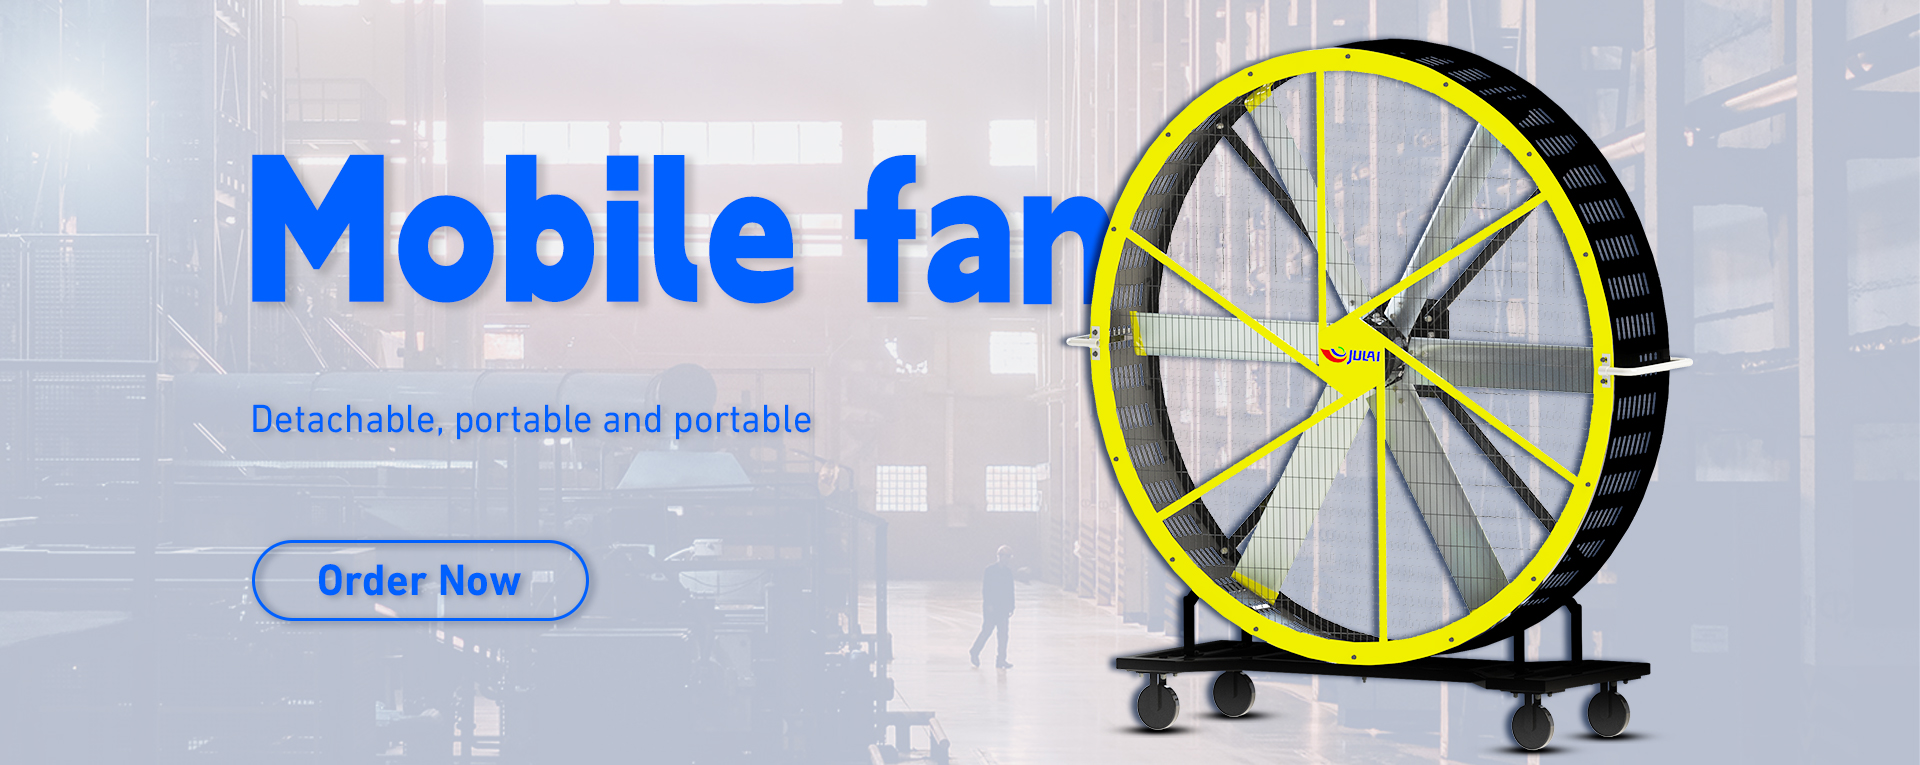 Mobile fan